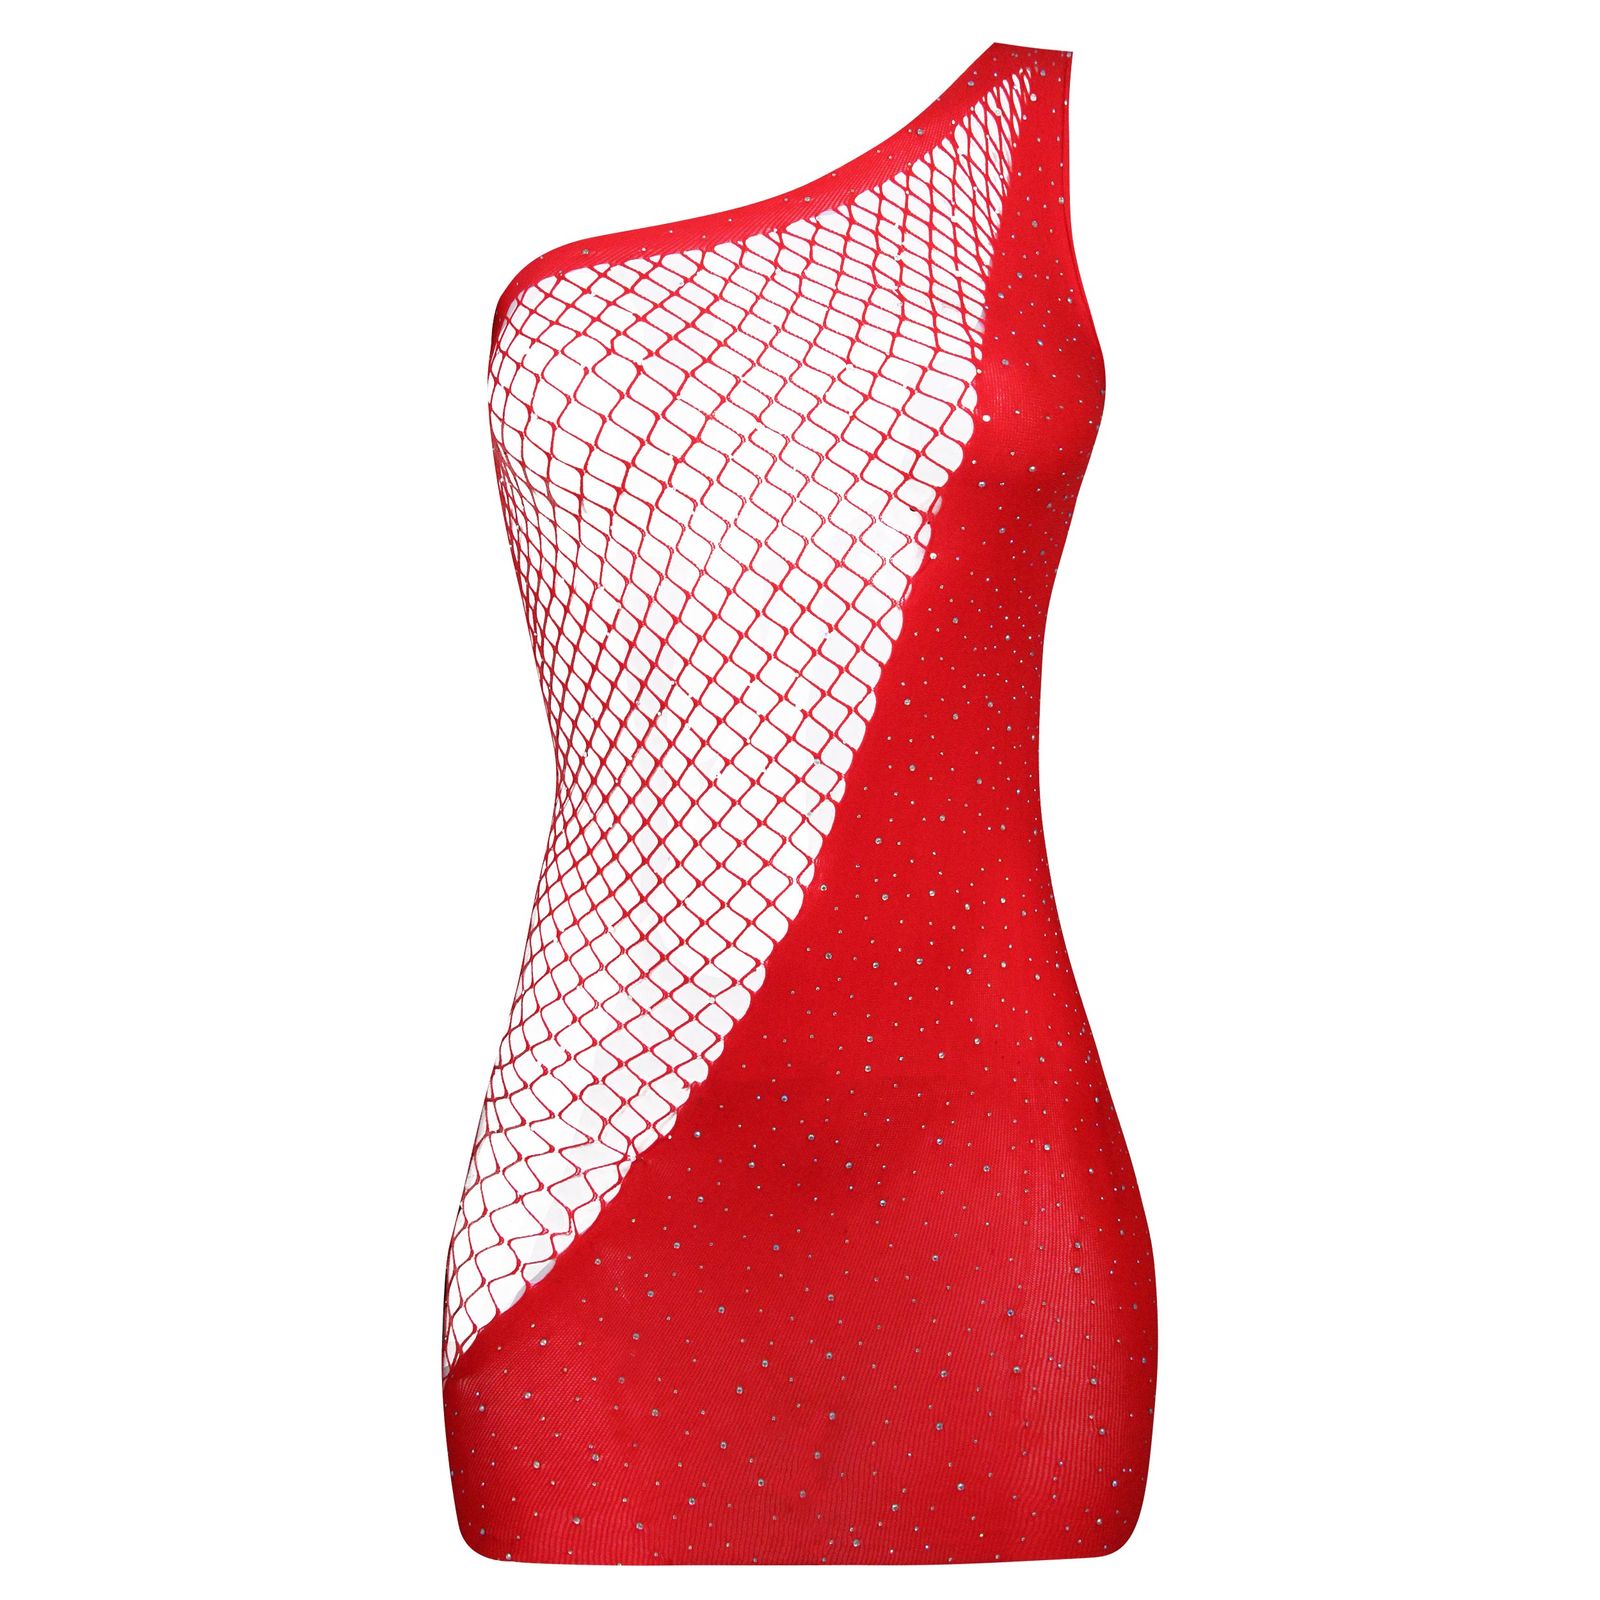 لباس خواب زنانه ماییلدا کد 4593-6893 رنگ قرمز -  - 1